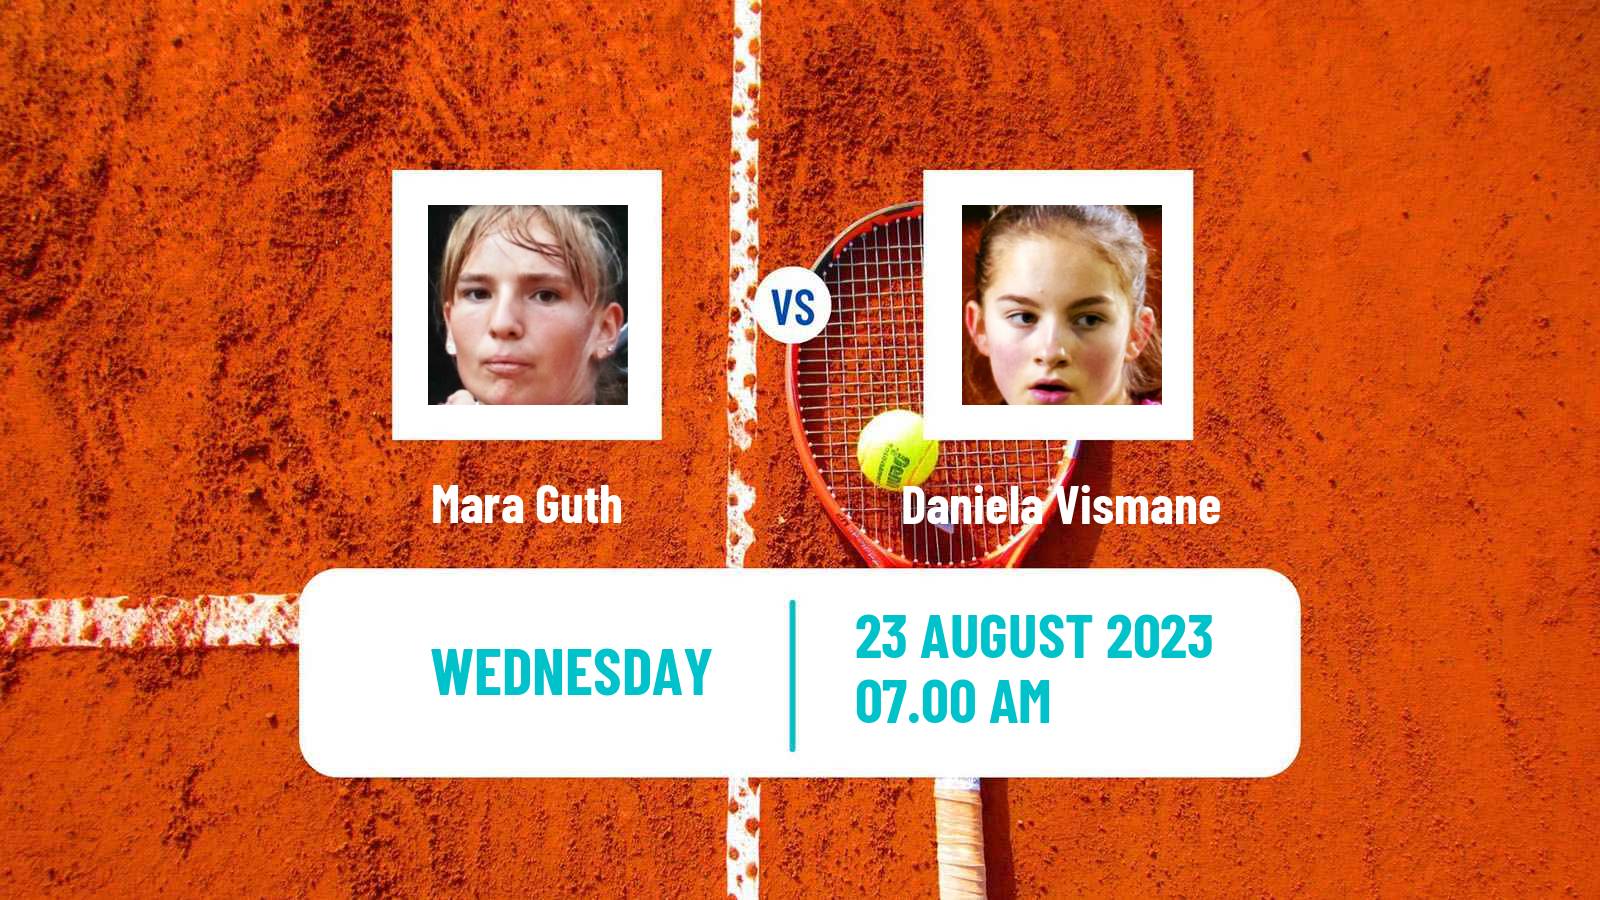 Tennis ITF W25 Braunschweig Women Mara Guth - Daniela Vismane